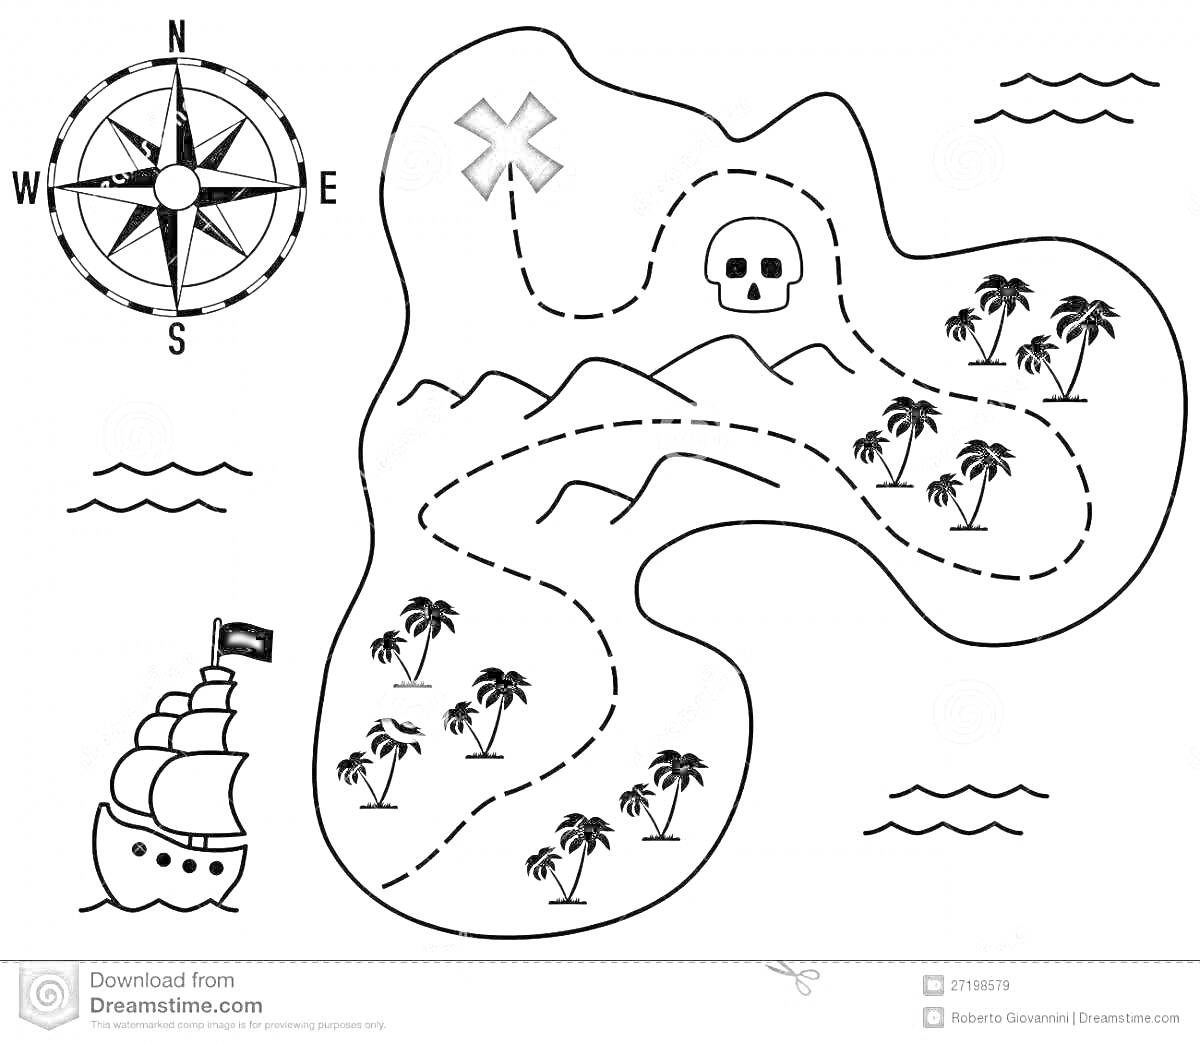 Раскраска карта сокровищ с компасом, пиратским кораблем, пальмами, черепом, крестом, горами и волнами